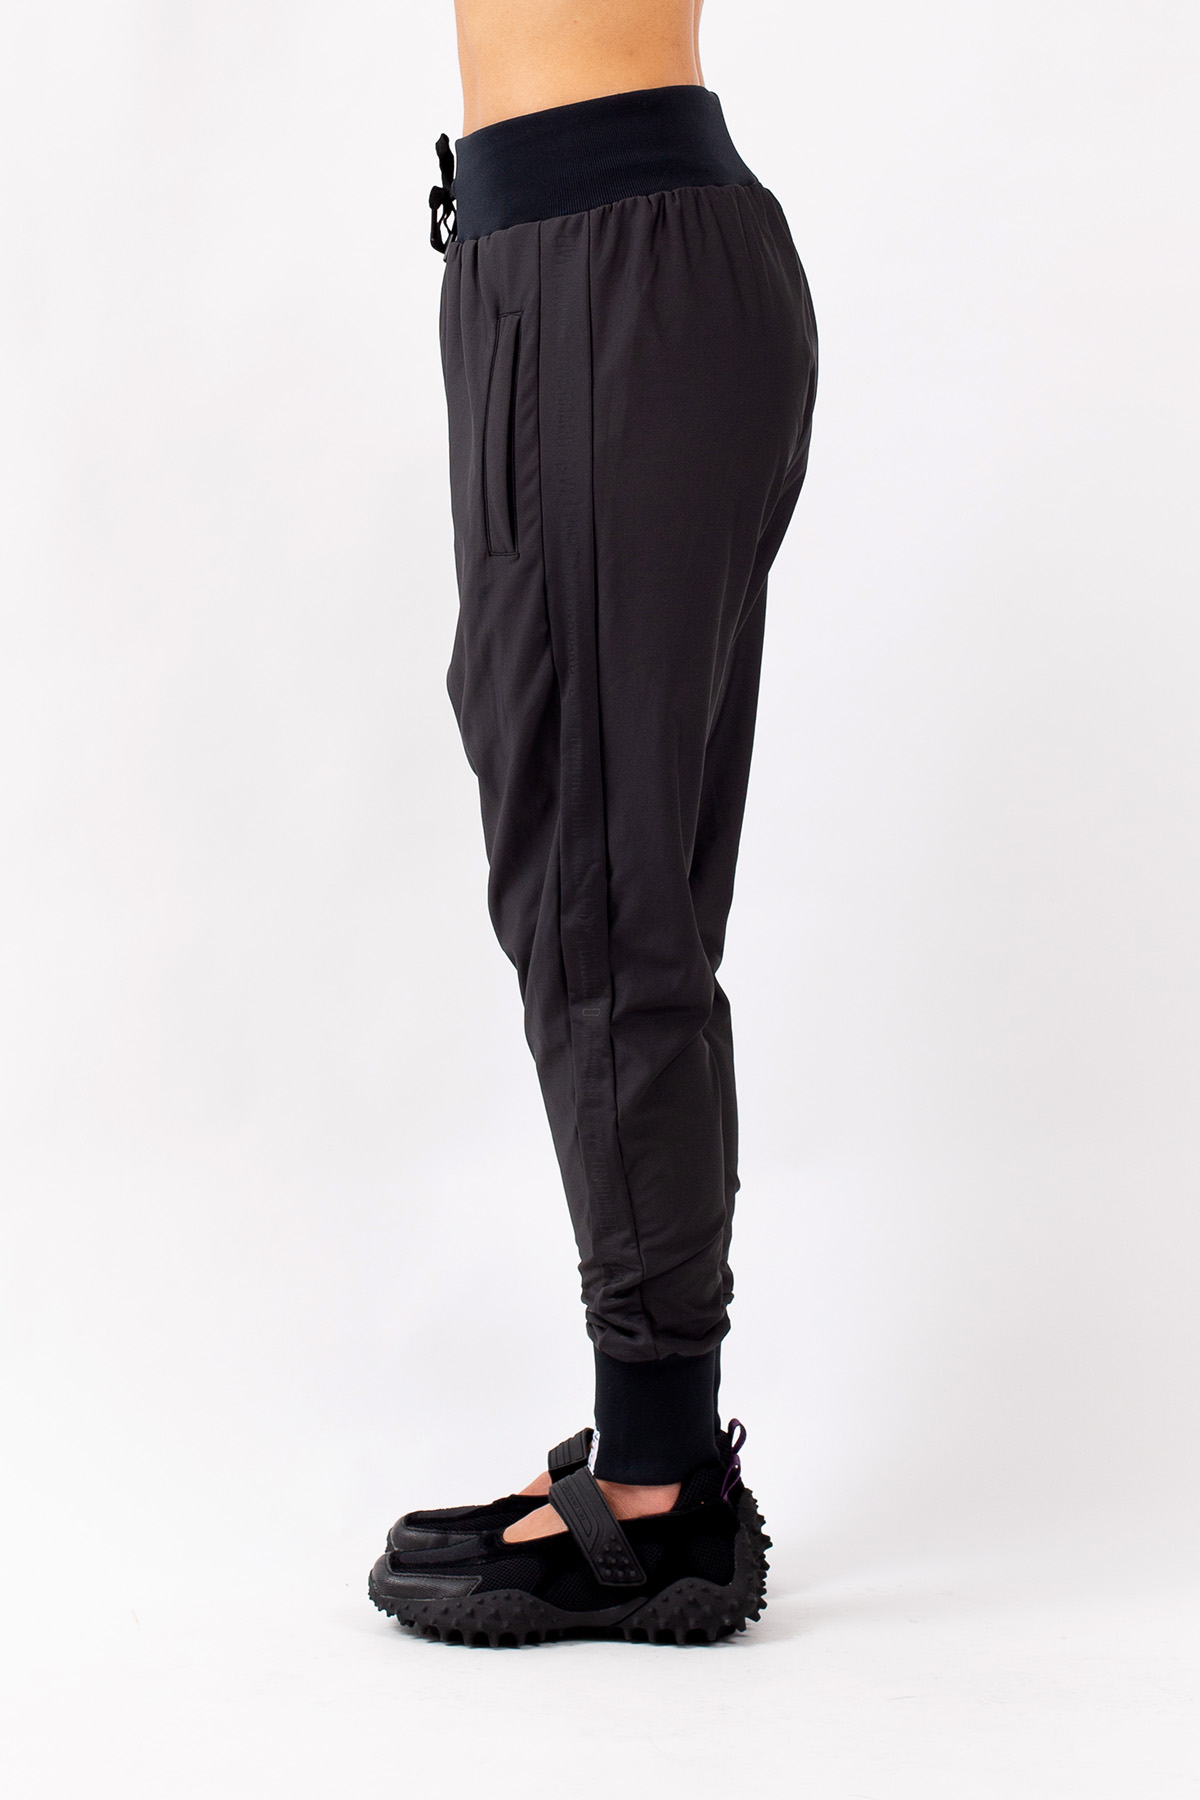 Eivy Pants-Harlem Wedge Pantaloni Eleganti da Uomo Donna 